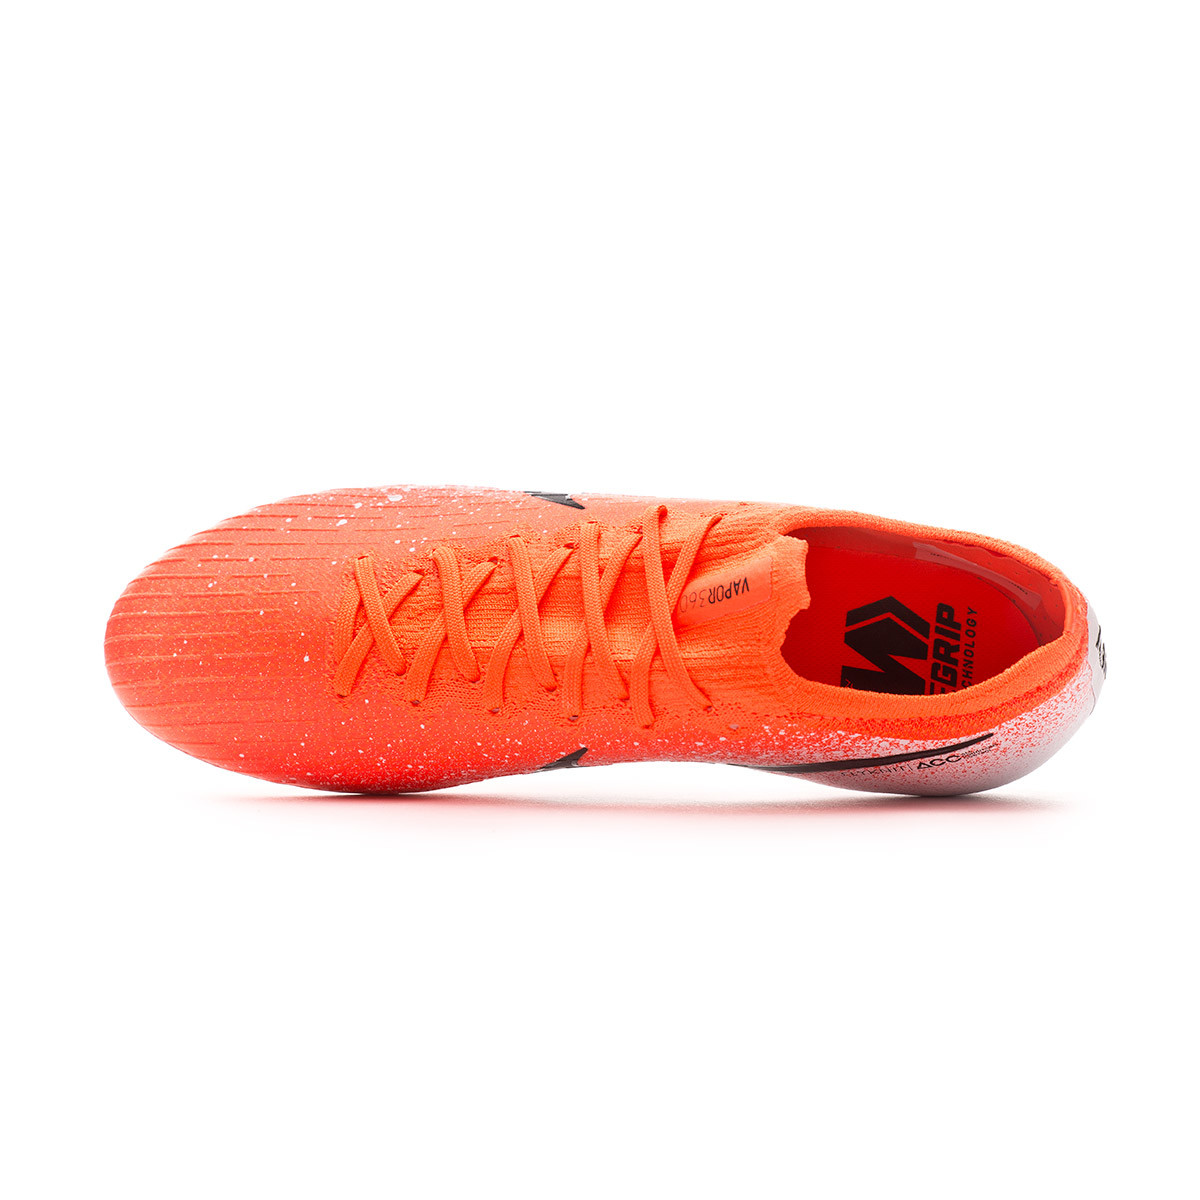 耐吉毒蜂平底足球鞋黑橘色Nike Hypervenom Phelon Boots